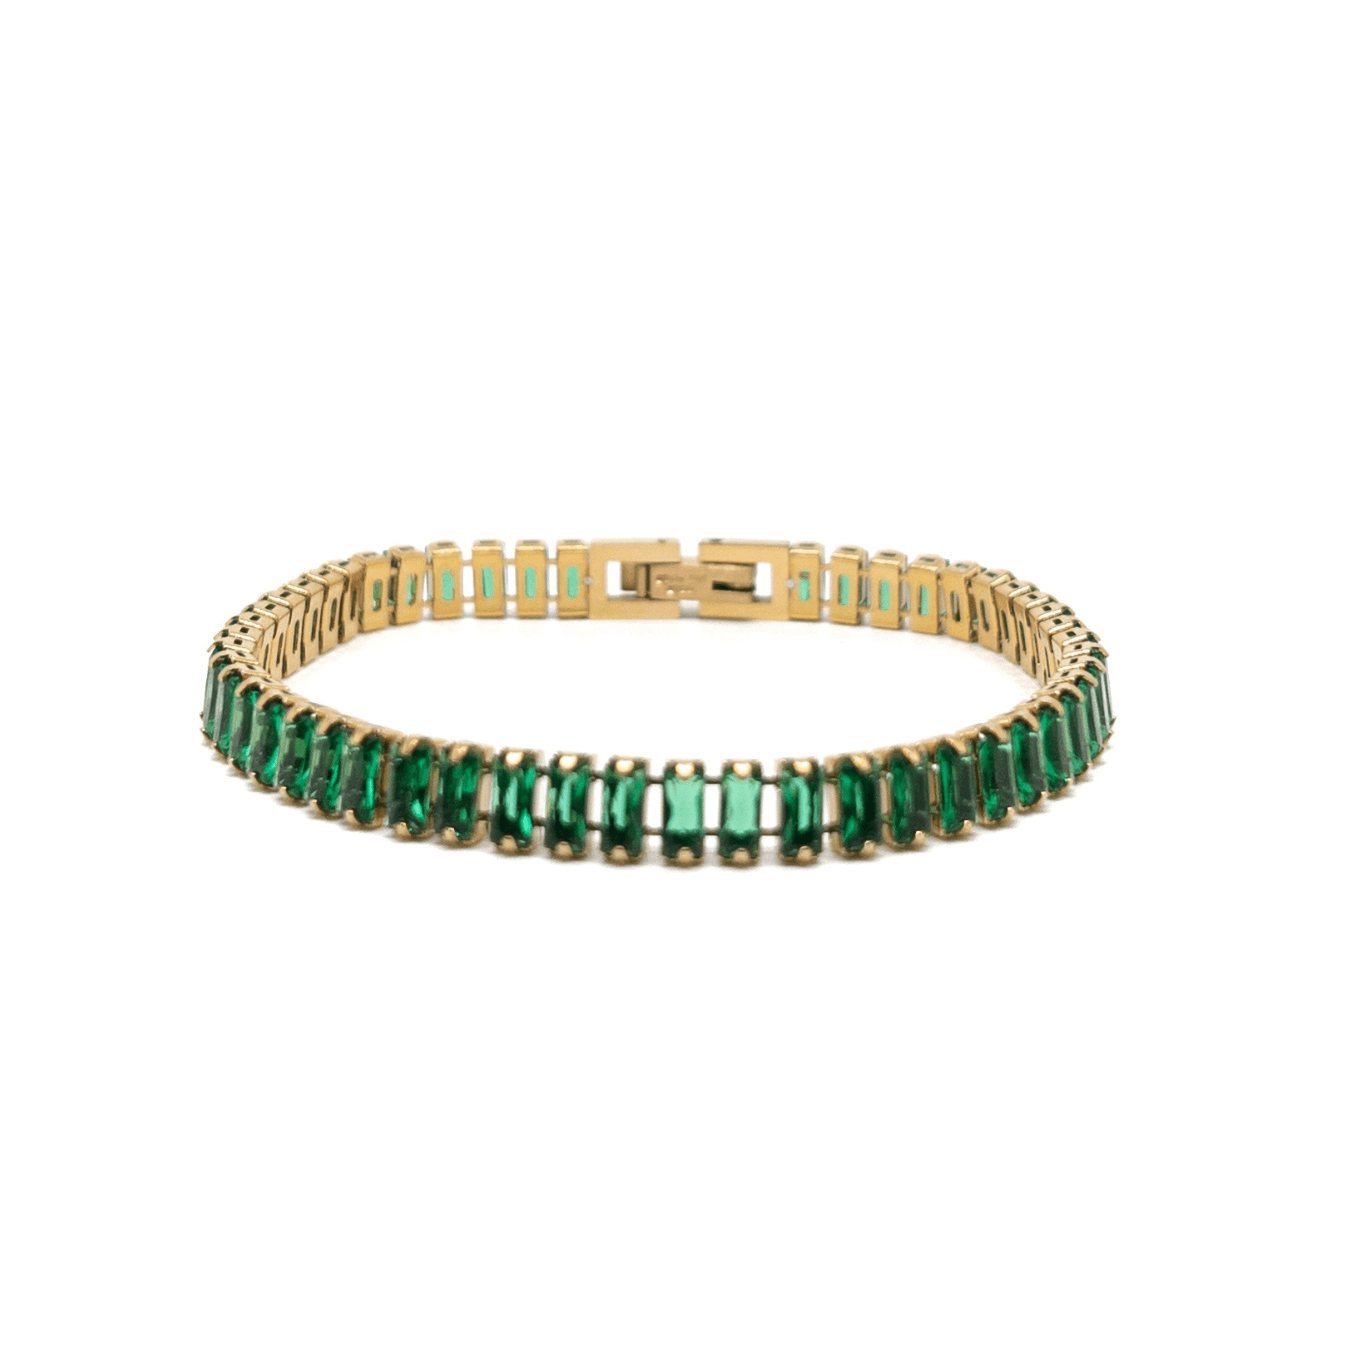 The Green Zircon Tennis Bracelet